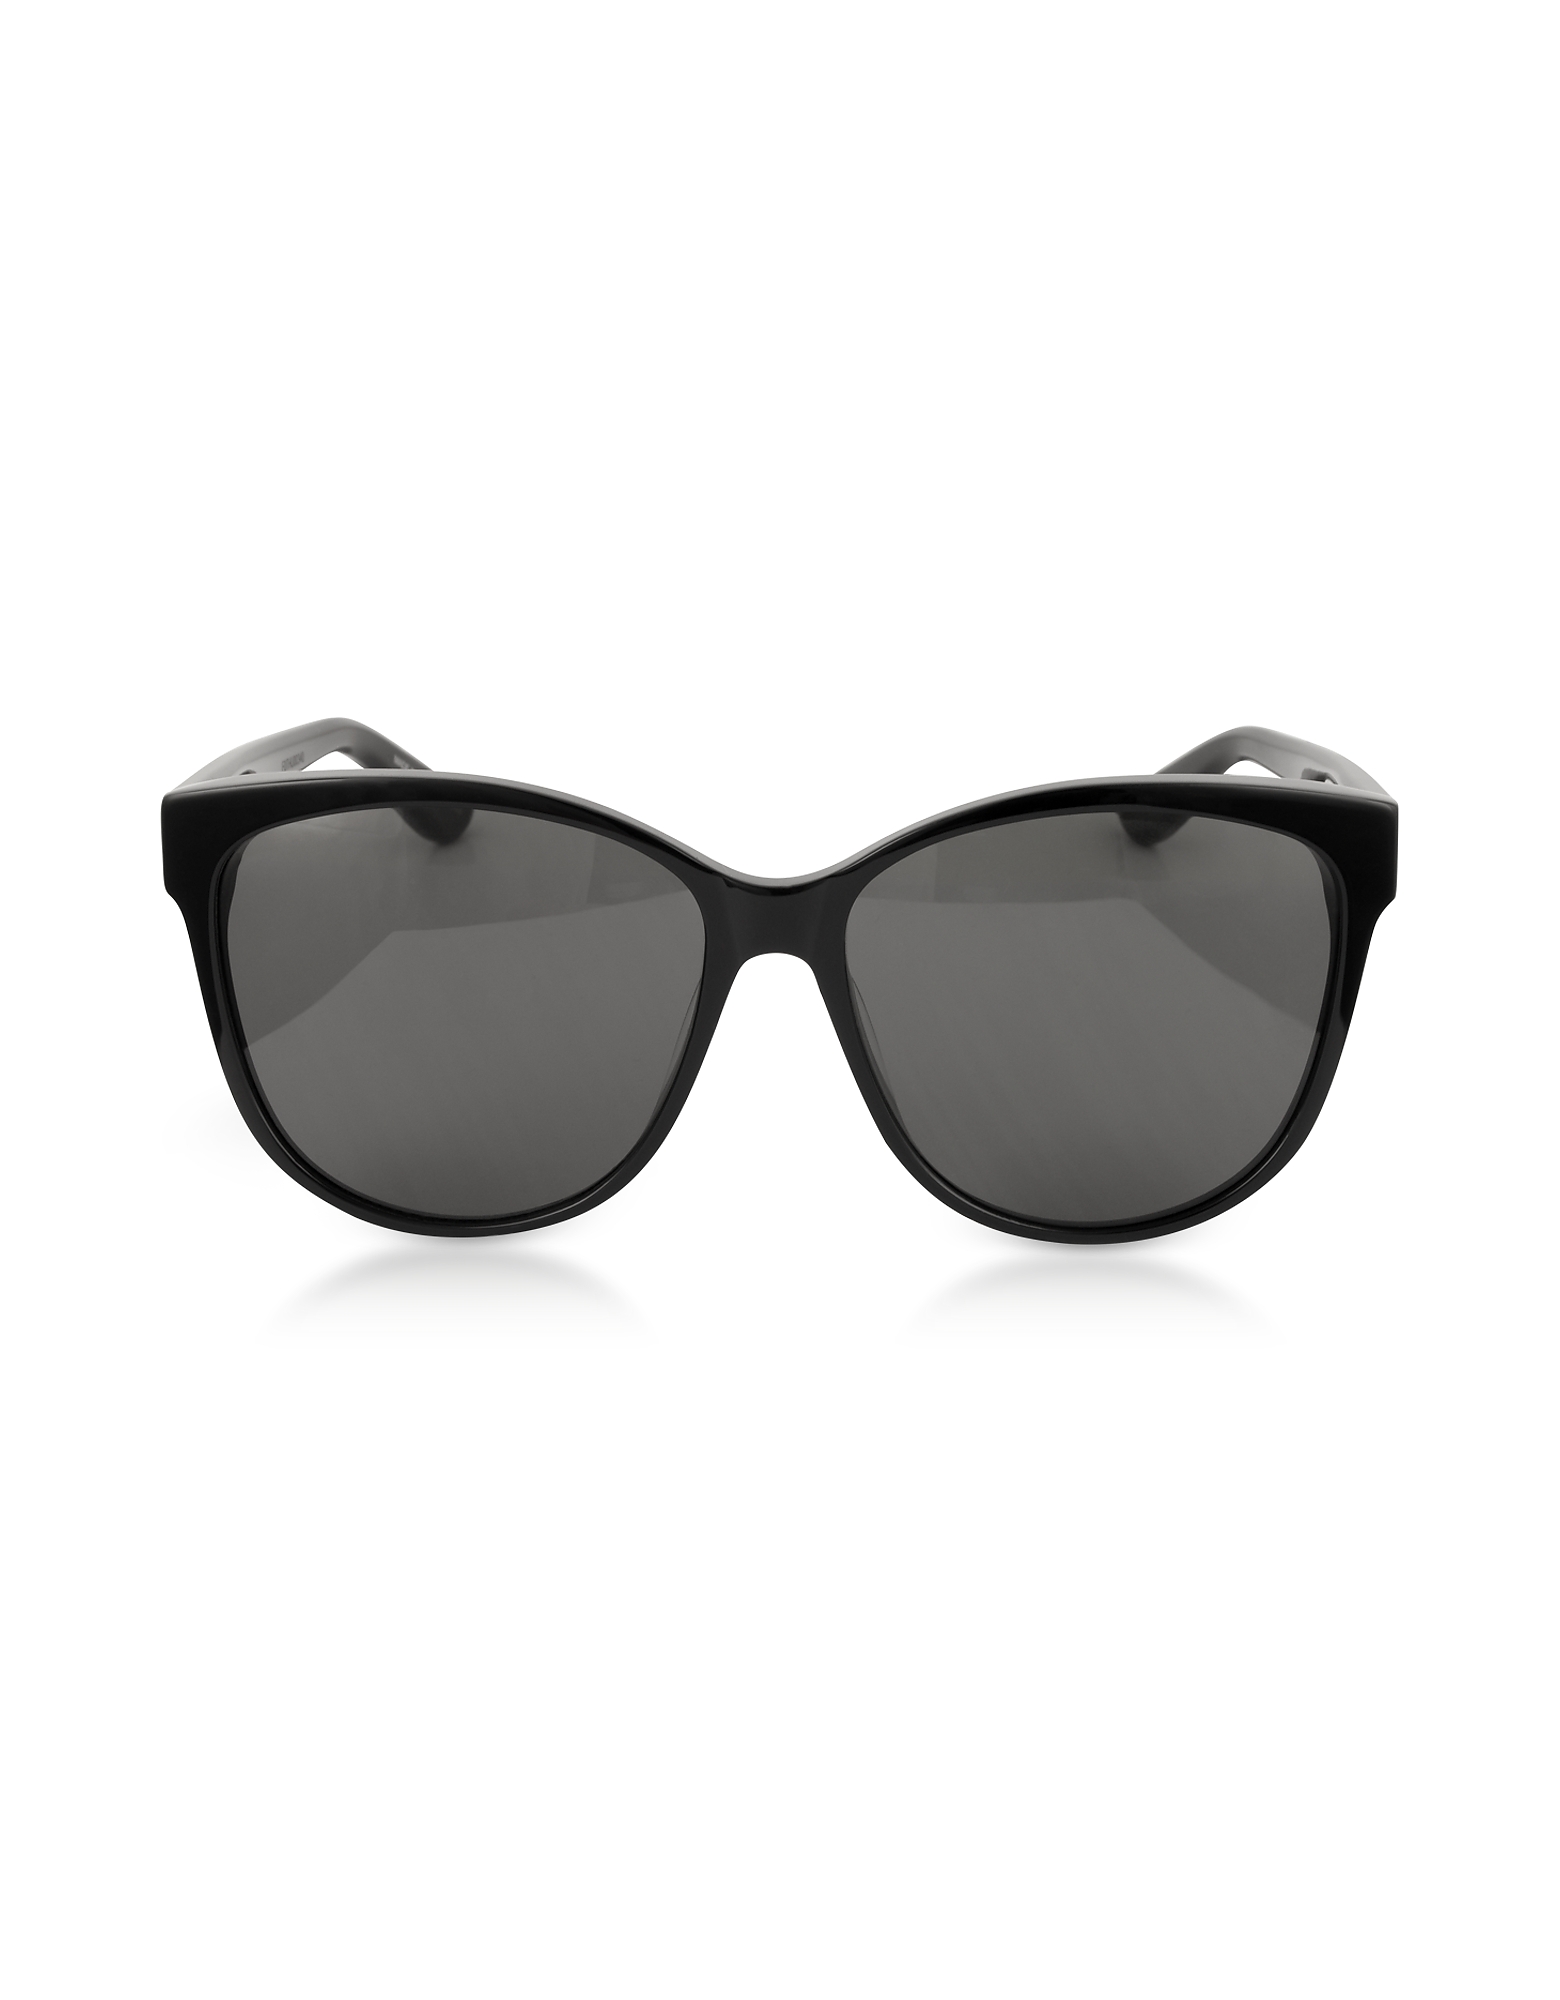 

SL M23/K Oval Frame Women's Sunglasses, Black/gray